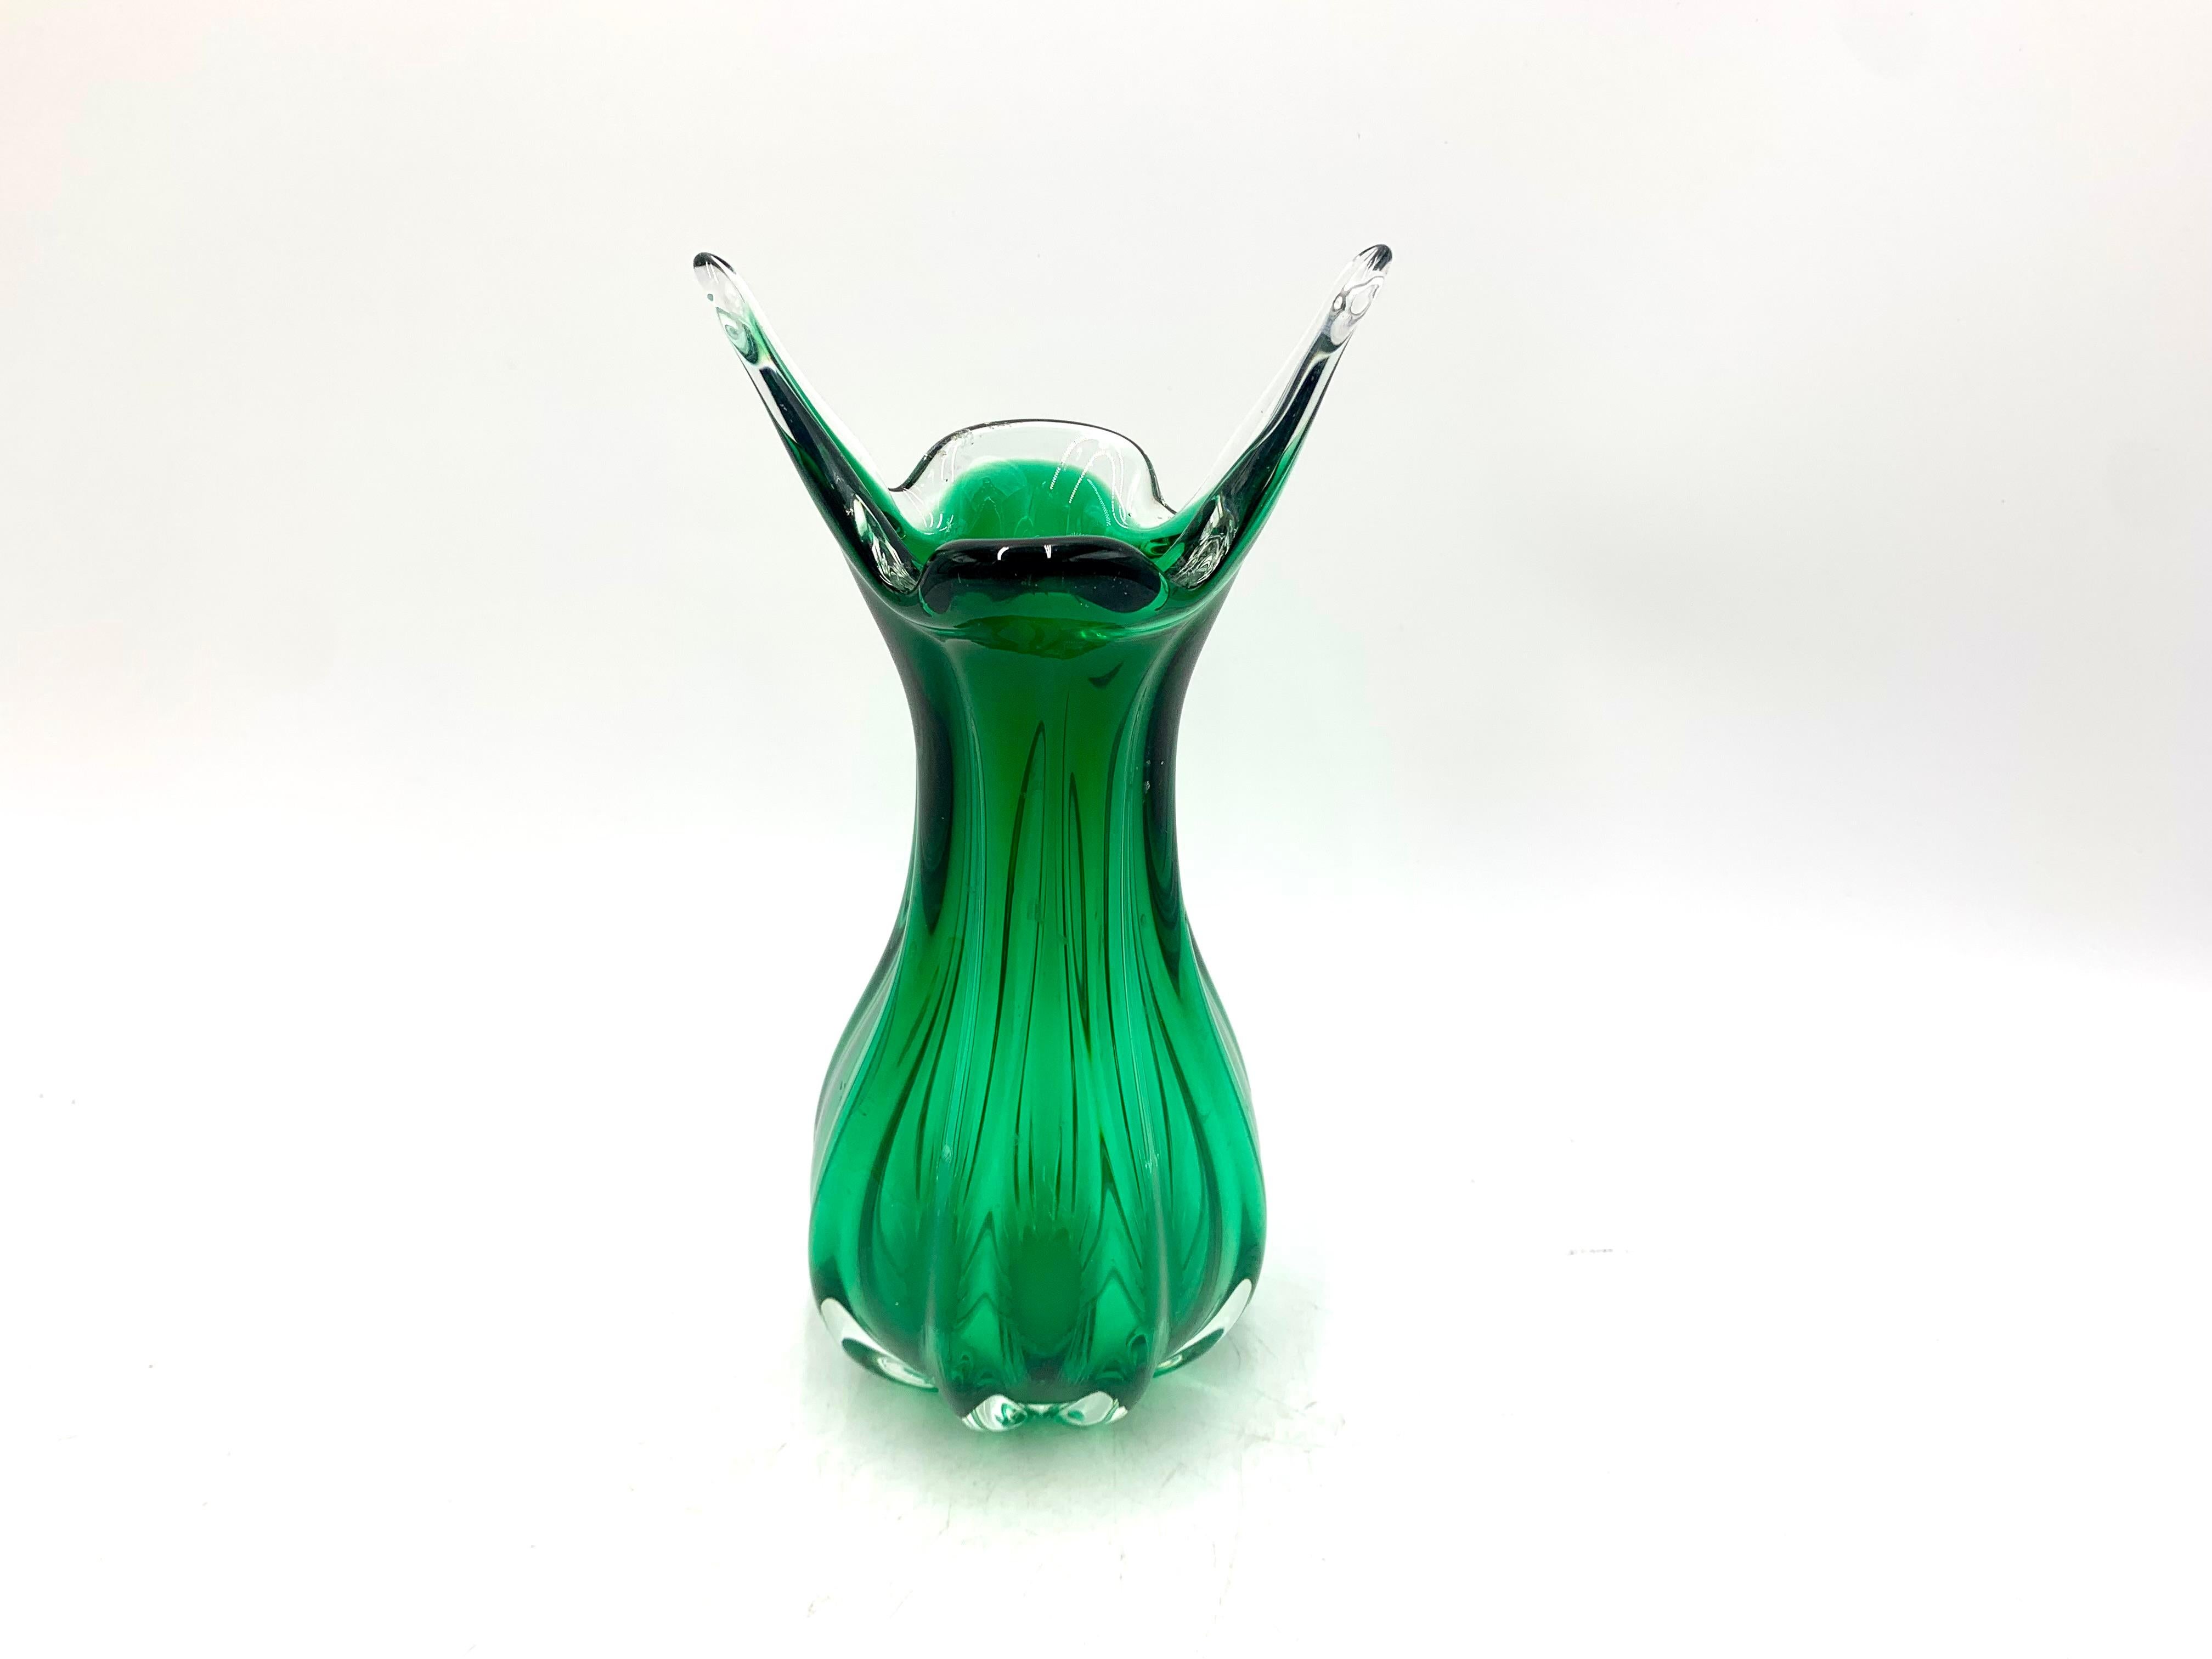 Un vase vert produit en République tchèque, probablement par Egermann Steelworks dans les années 1970. Très bon état sans dommage.

Mesures : hauteur 23cm
diamètre 9cm.

